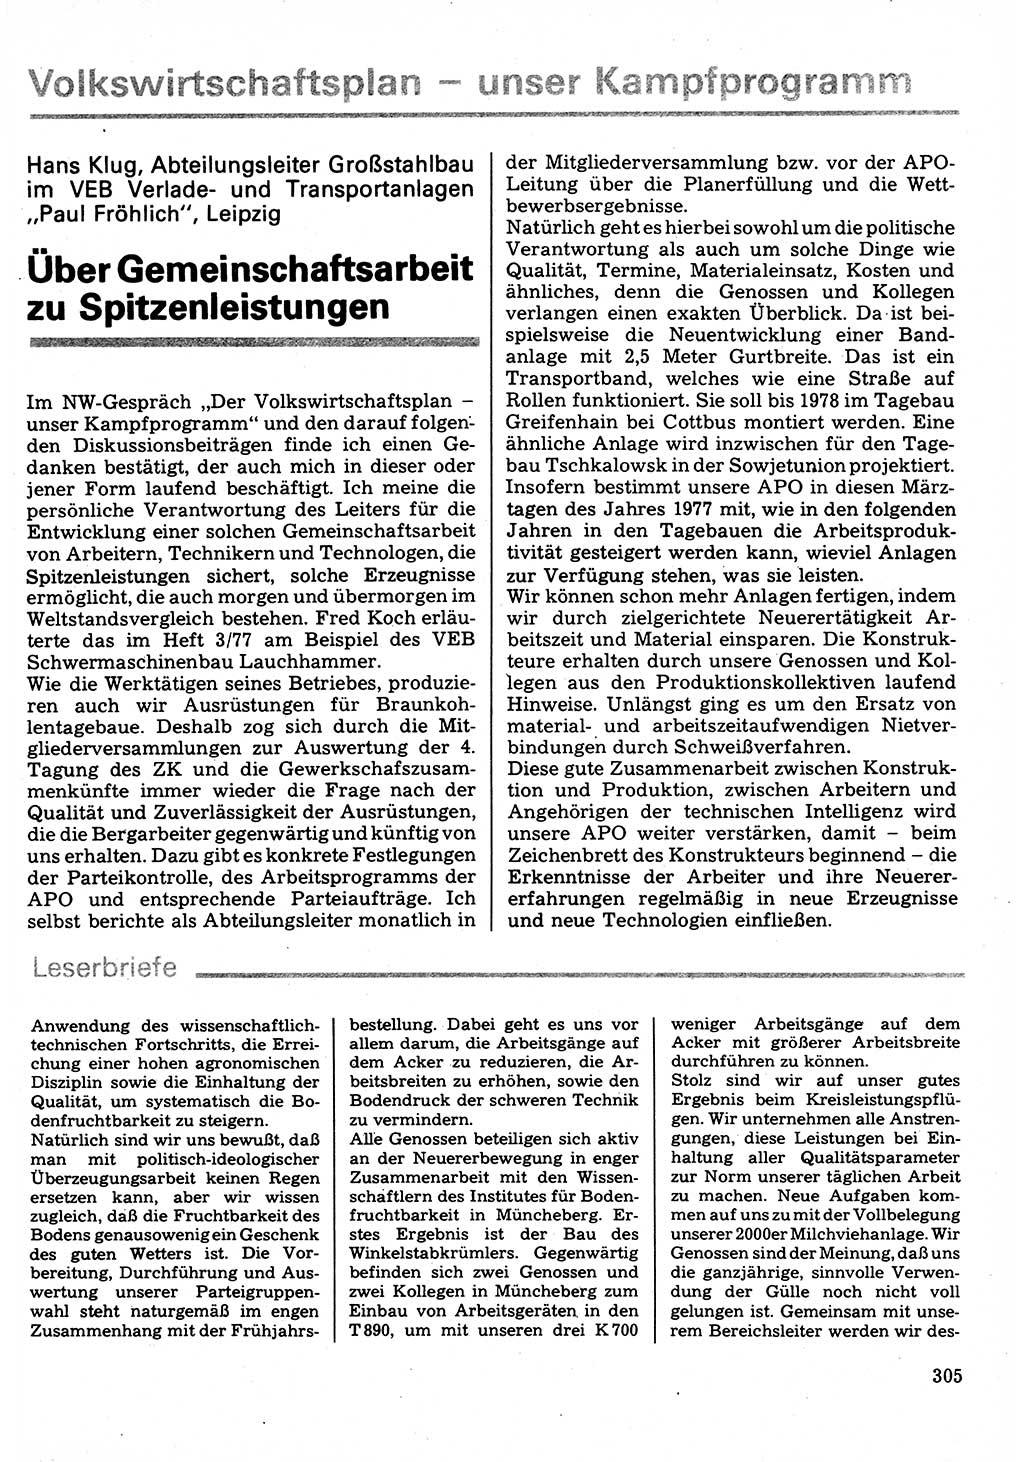 Neuer Weg (NW), Organ des Zentralkomitees (ZK) der SED (Sozialistische Einheitspartei Deutschlands) für Fragen des Parteilebens, 32. Jahrgang [Deutsche Demokratische Republik (DDR)] 1977, Seite 305 (NW ZK SED DDR 1977, S. 305)